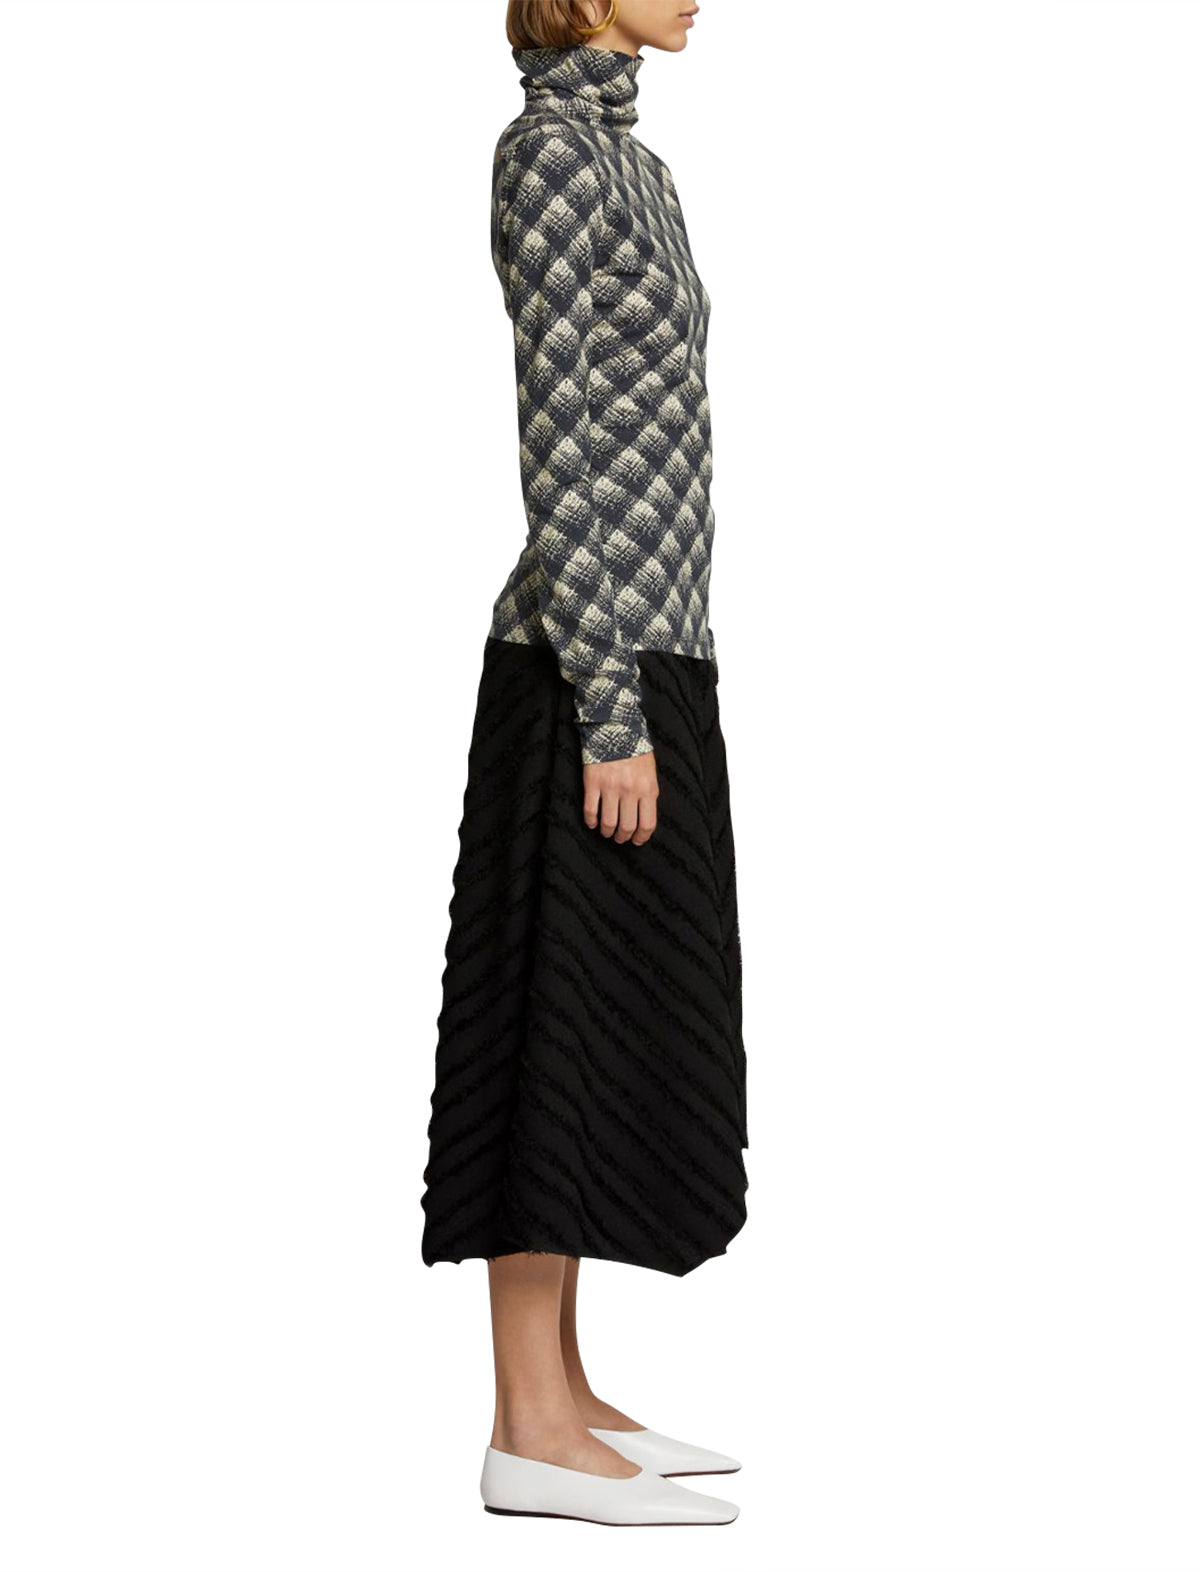 PROENZA SCHOULER WHITE LABEL Midi Skirt in Black